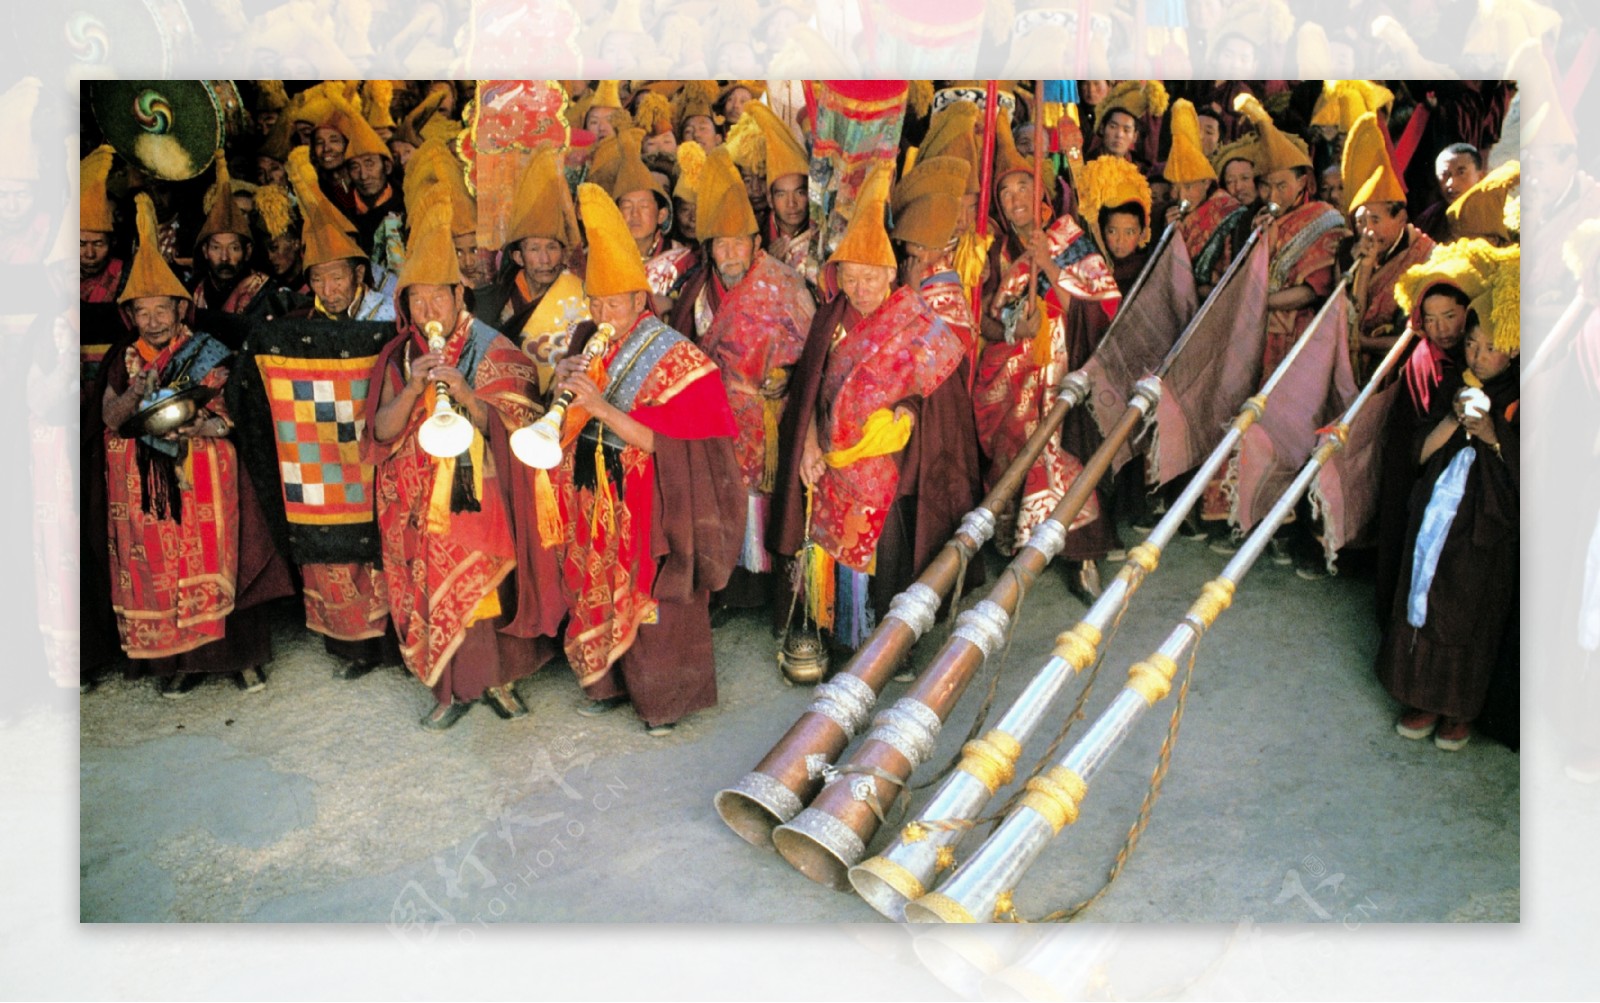 中国西藏风光风景风景特色民风民俗广告素材大辞典